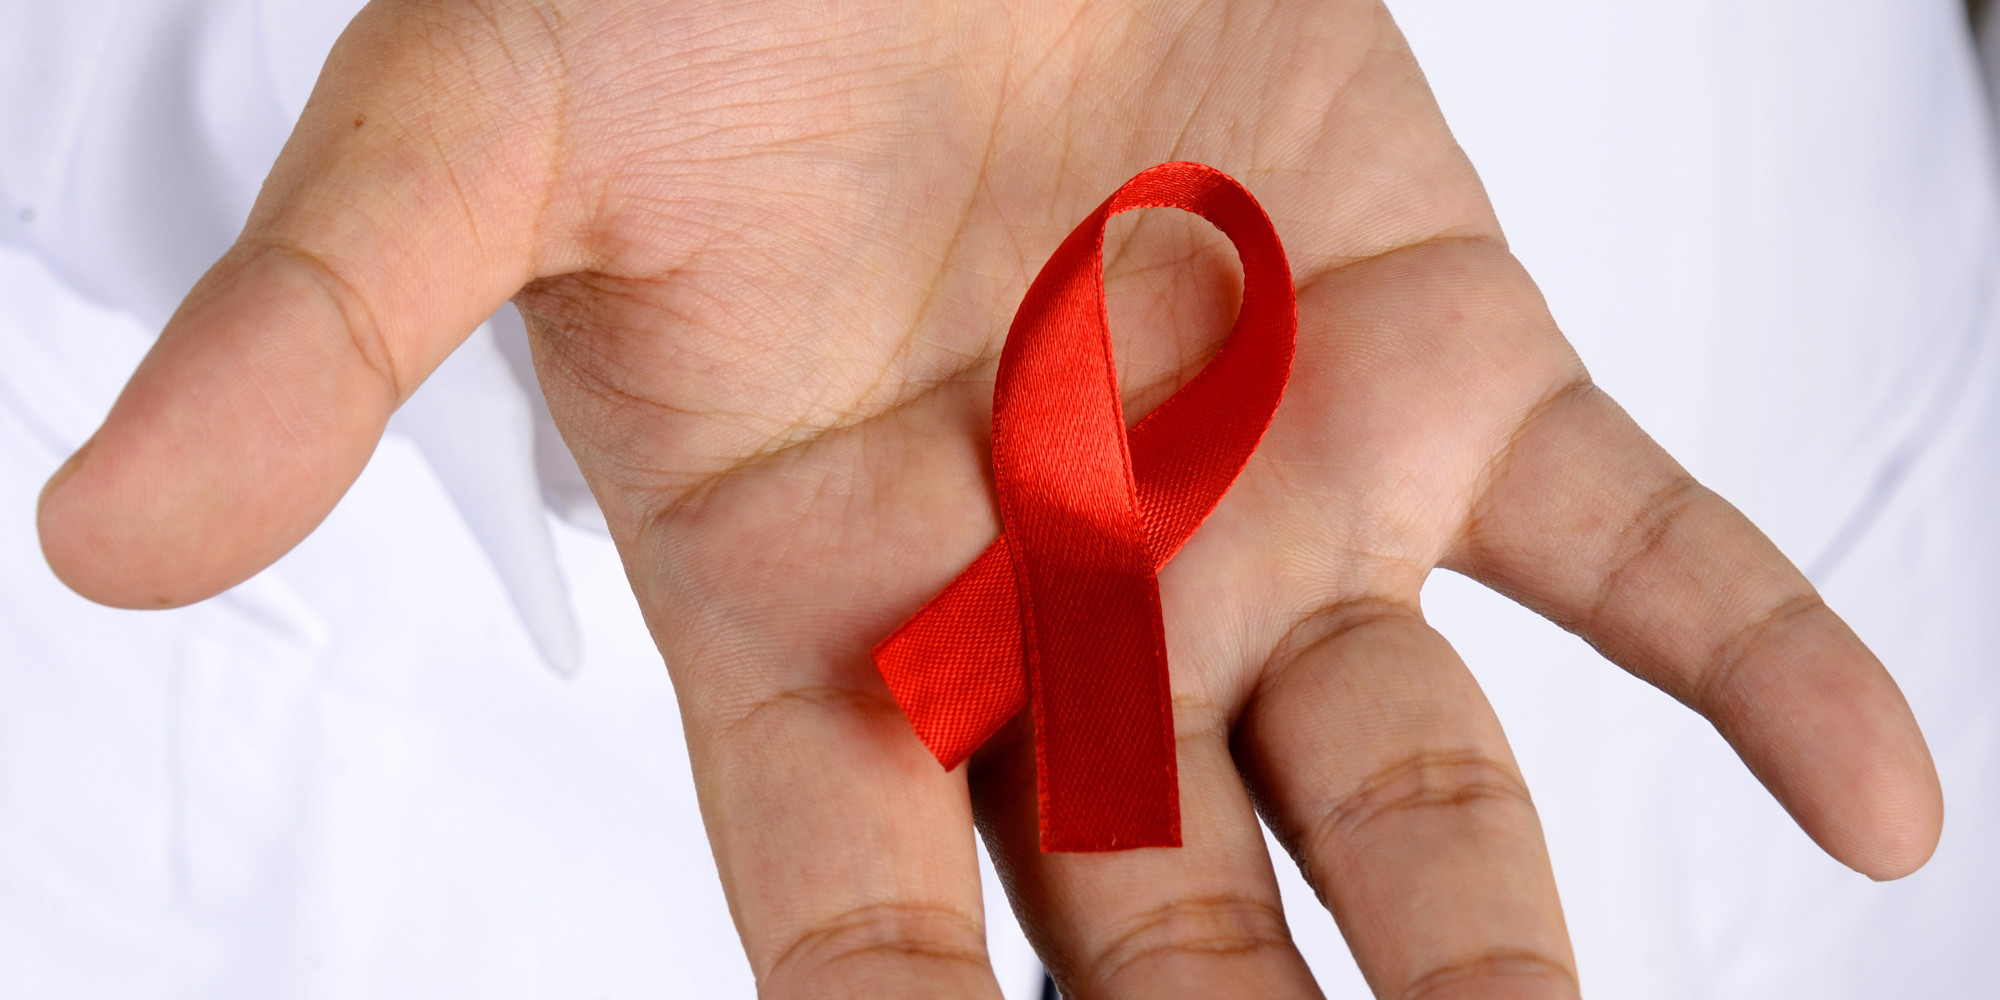 Estigma e preconceito dificultam enfrentamento do HIV, diz defensora pública